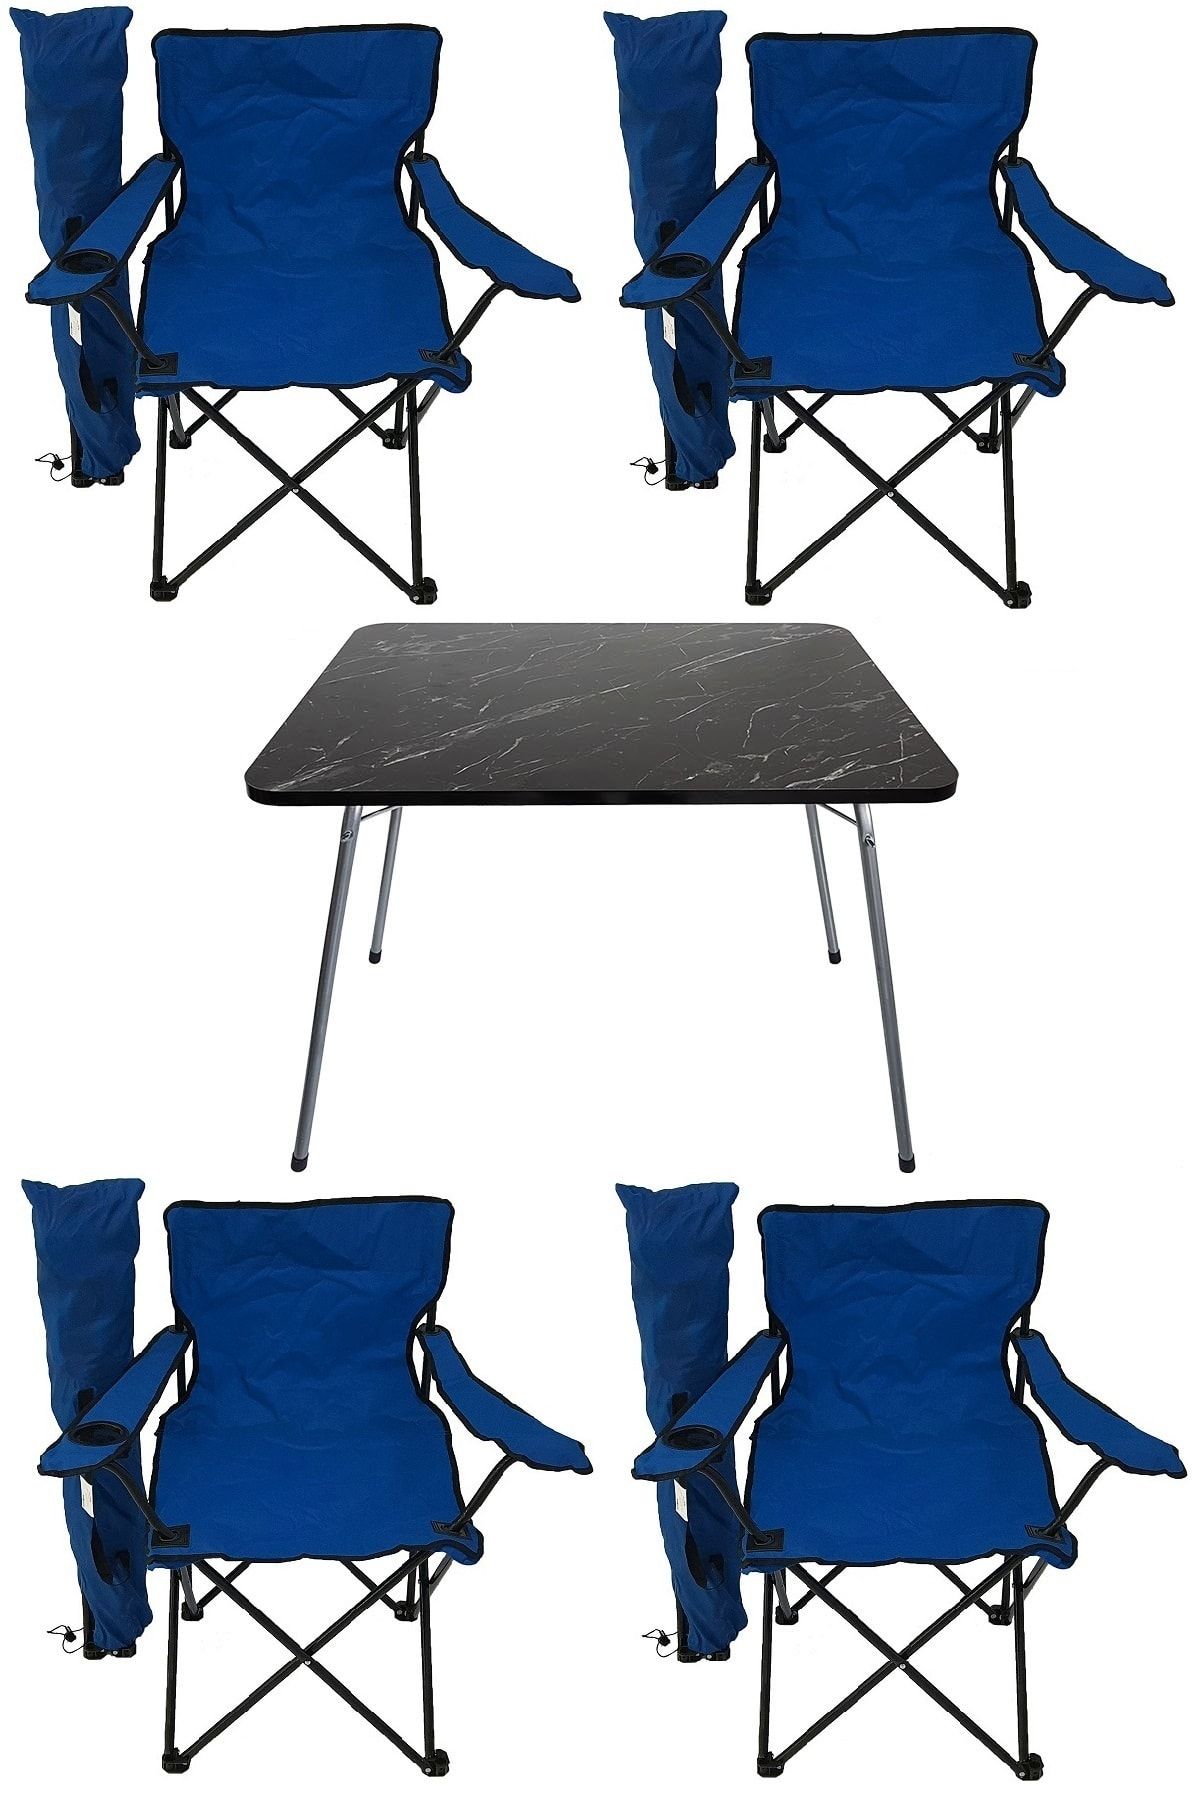 Bofigo 60x80 Granit Katlanır Masa + 4 Adet Kamp Sandalyesi Katlanır Sandalye Piknik Plaj Sandalyesi Mavi